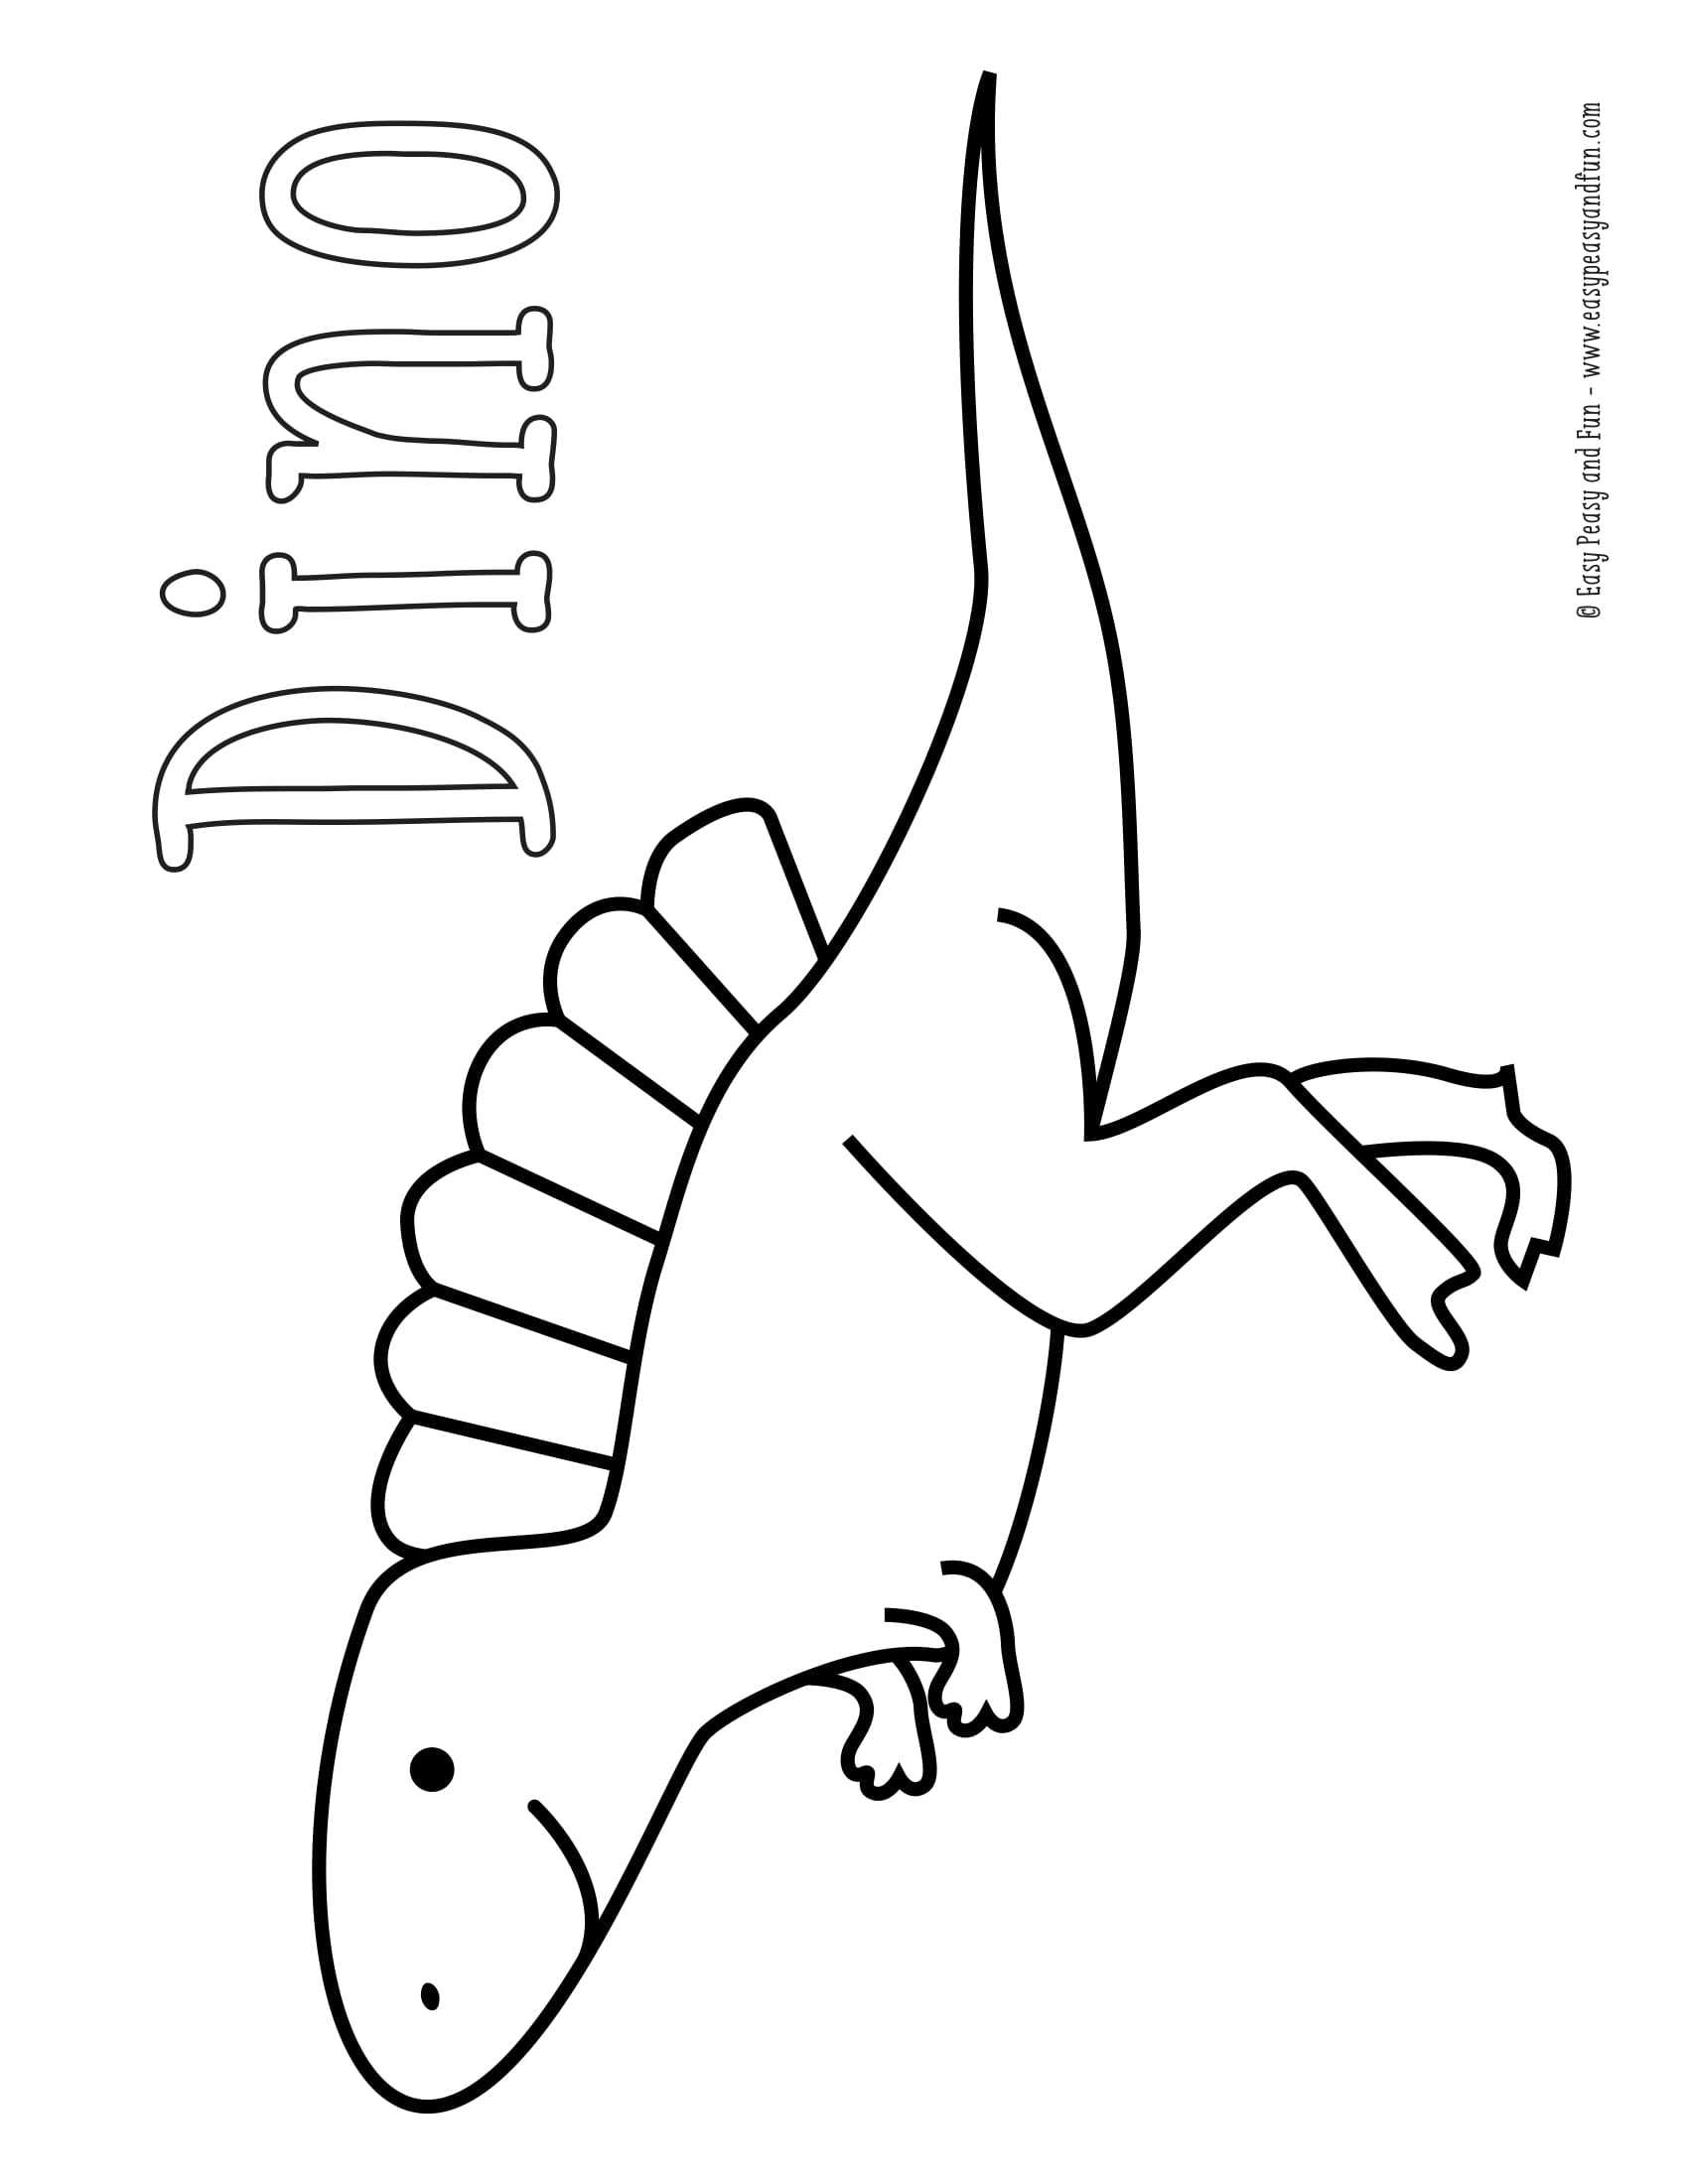 Okul Oncesi Dinozor Cesitleri Boyama Sayfasi 8 Okul Oncesi